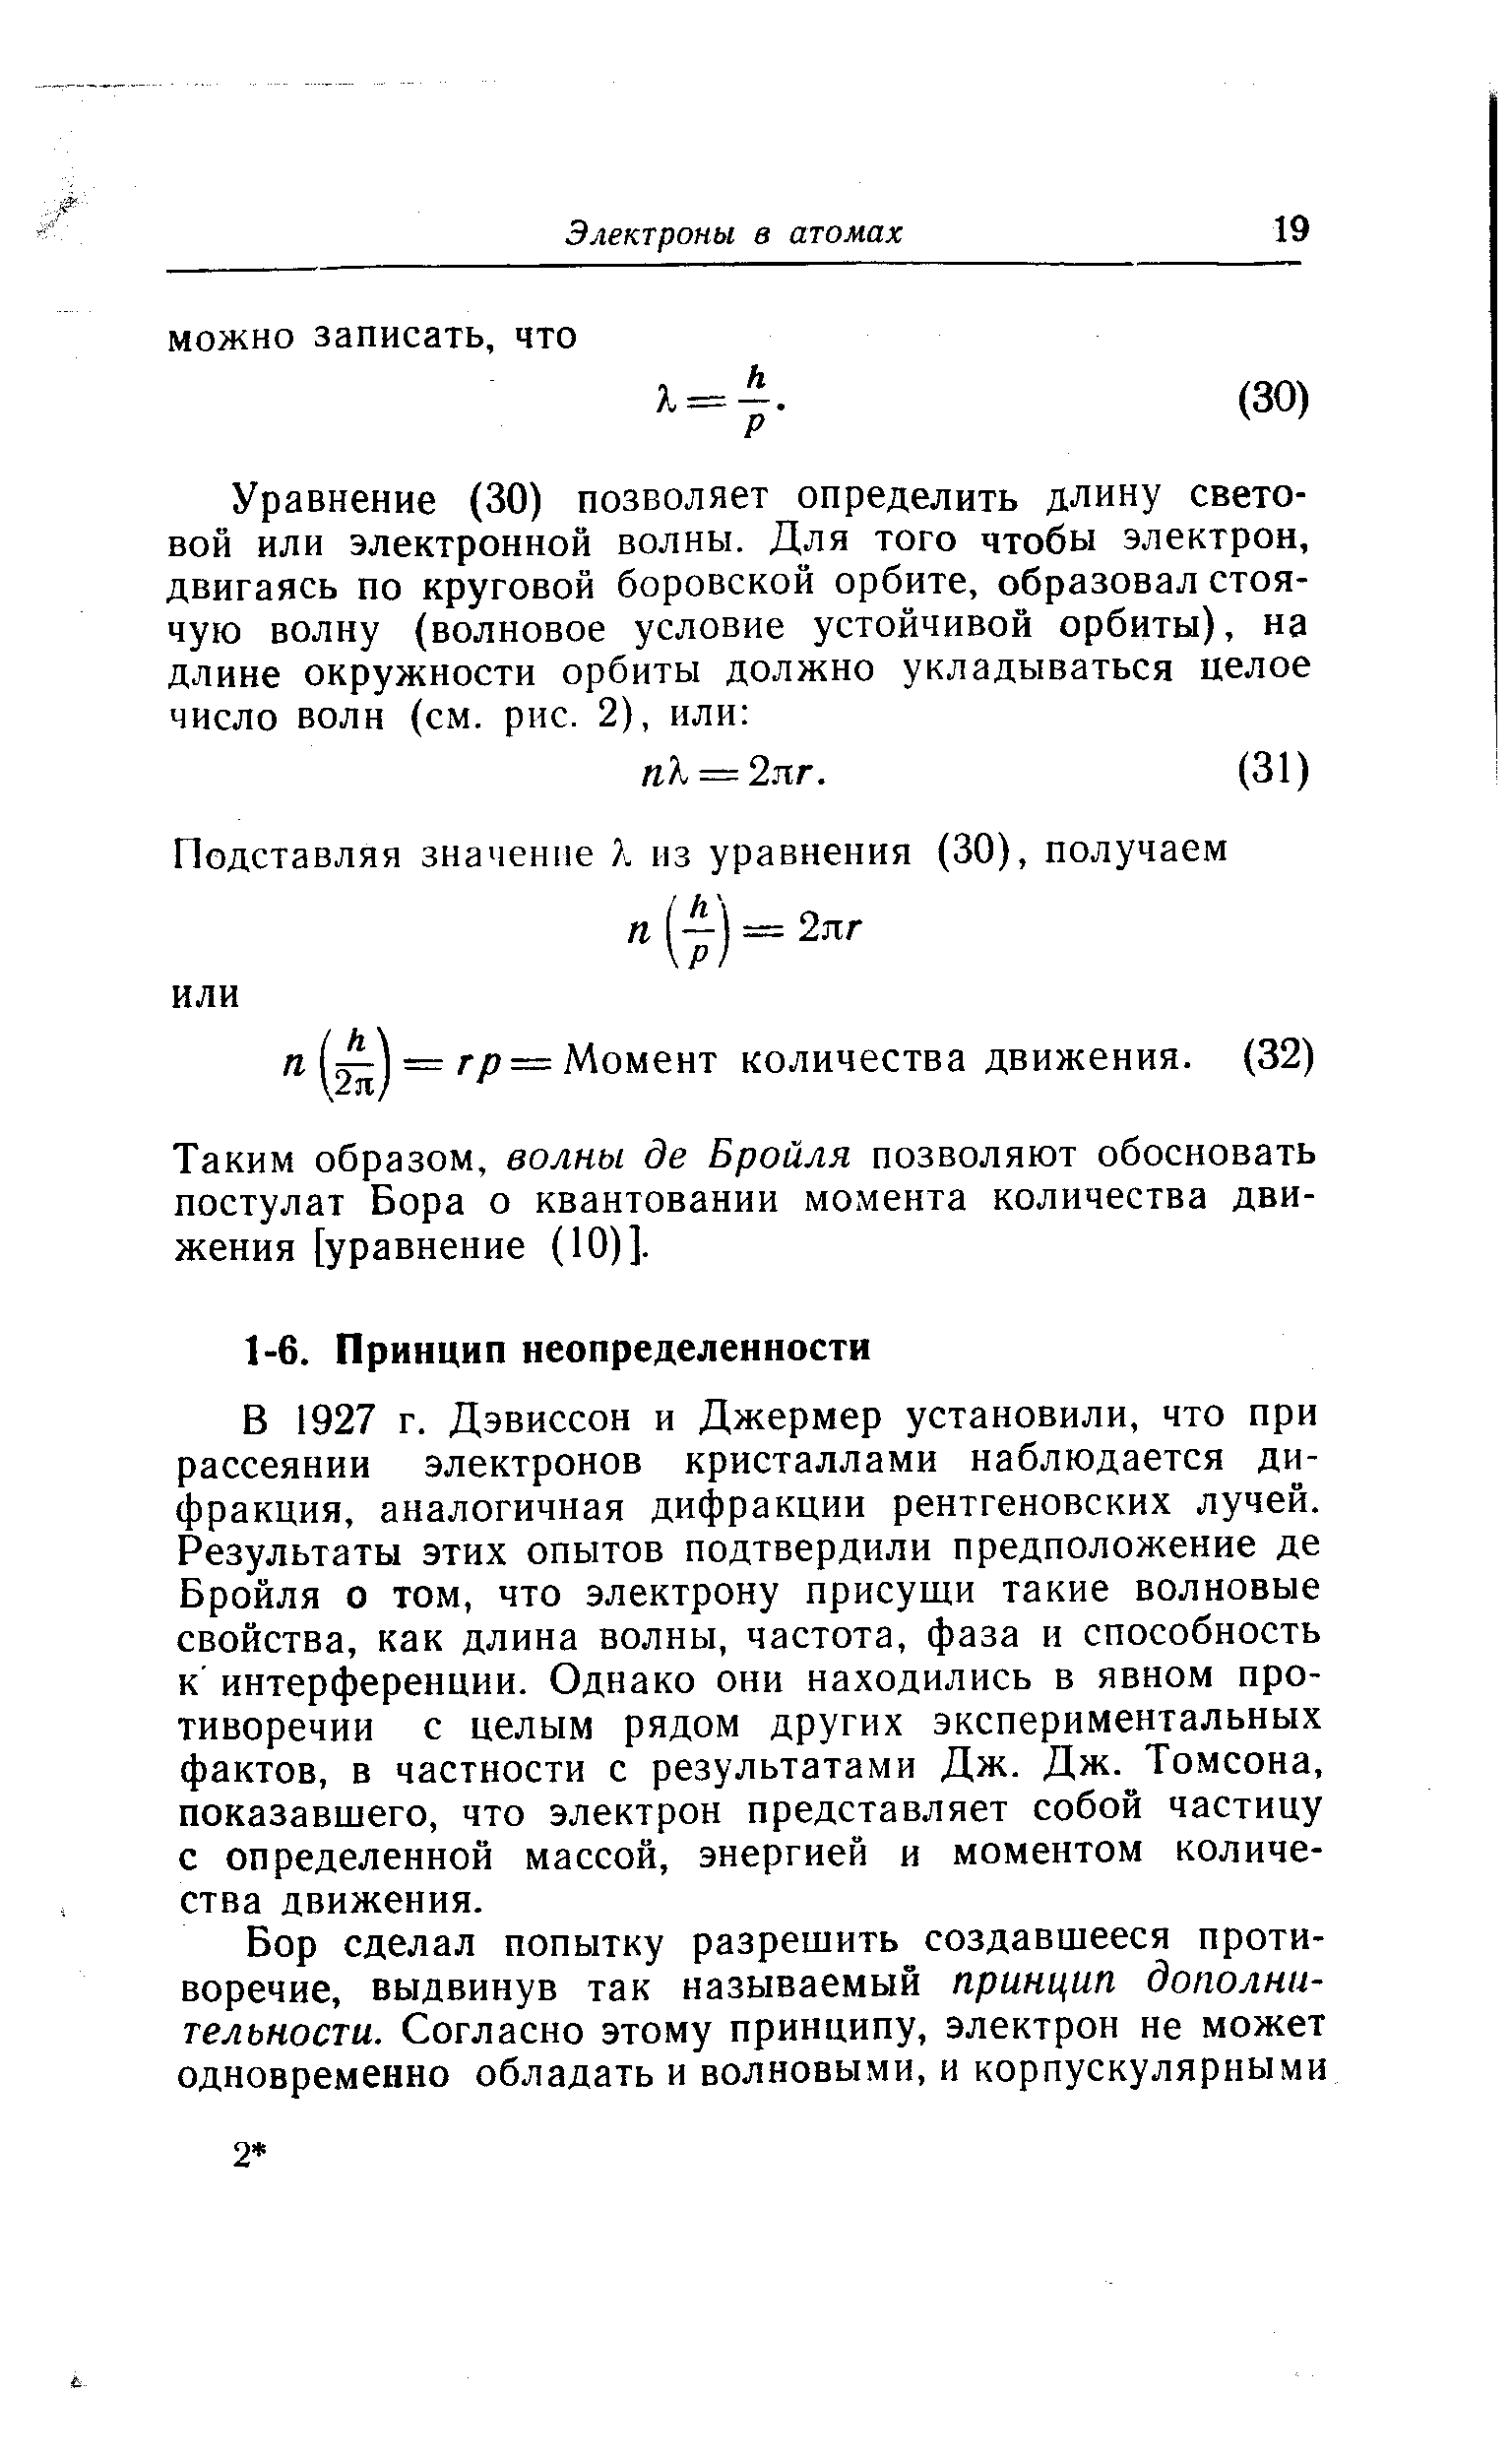 Таким образом, волны де Бройля позволяют обосновать постулат Бора о квантовании момента количества движения [уравнение (Ю)].